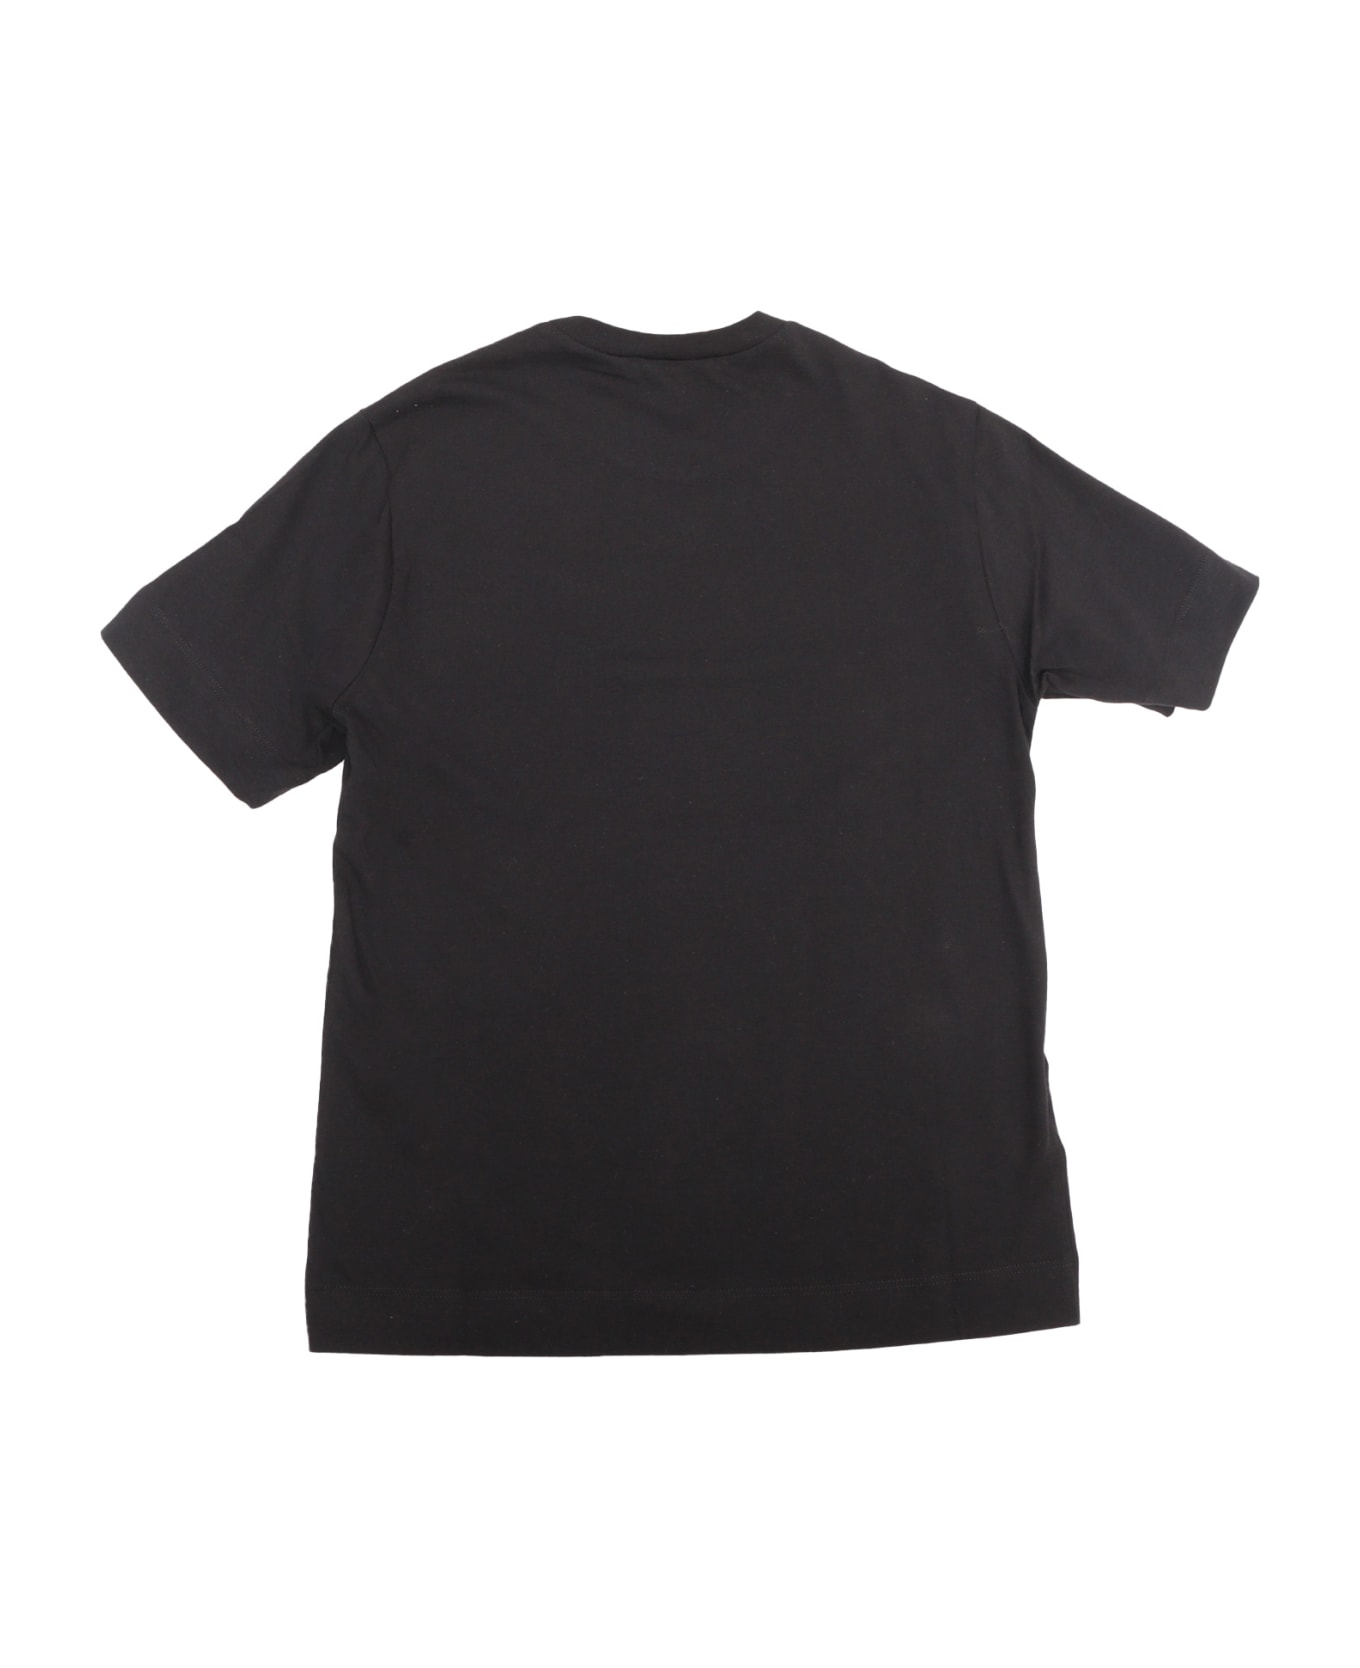 Marni Black Cotton T-shirt - BLACK